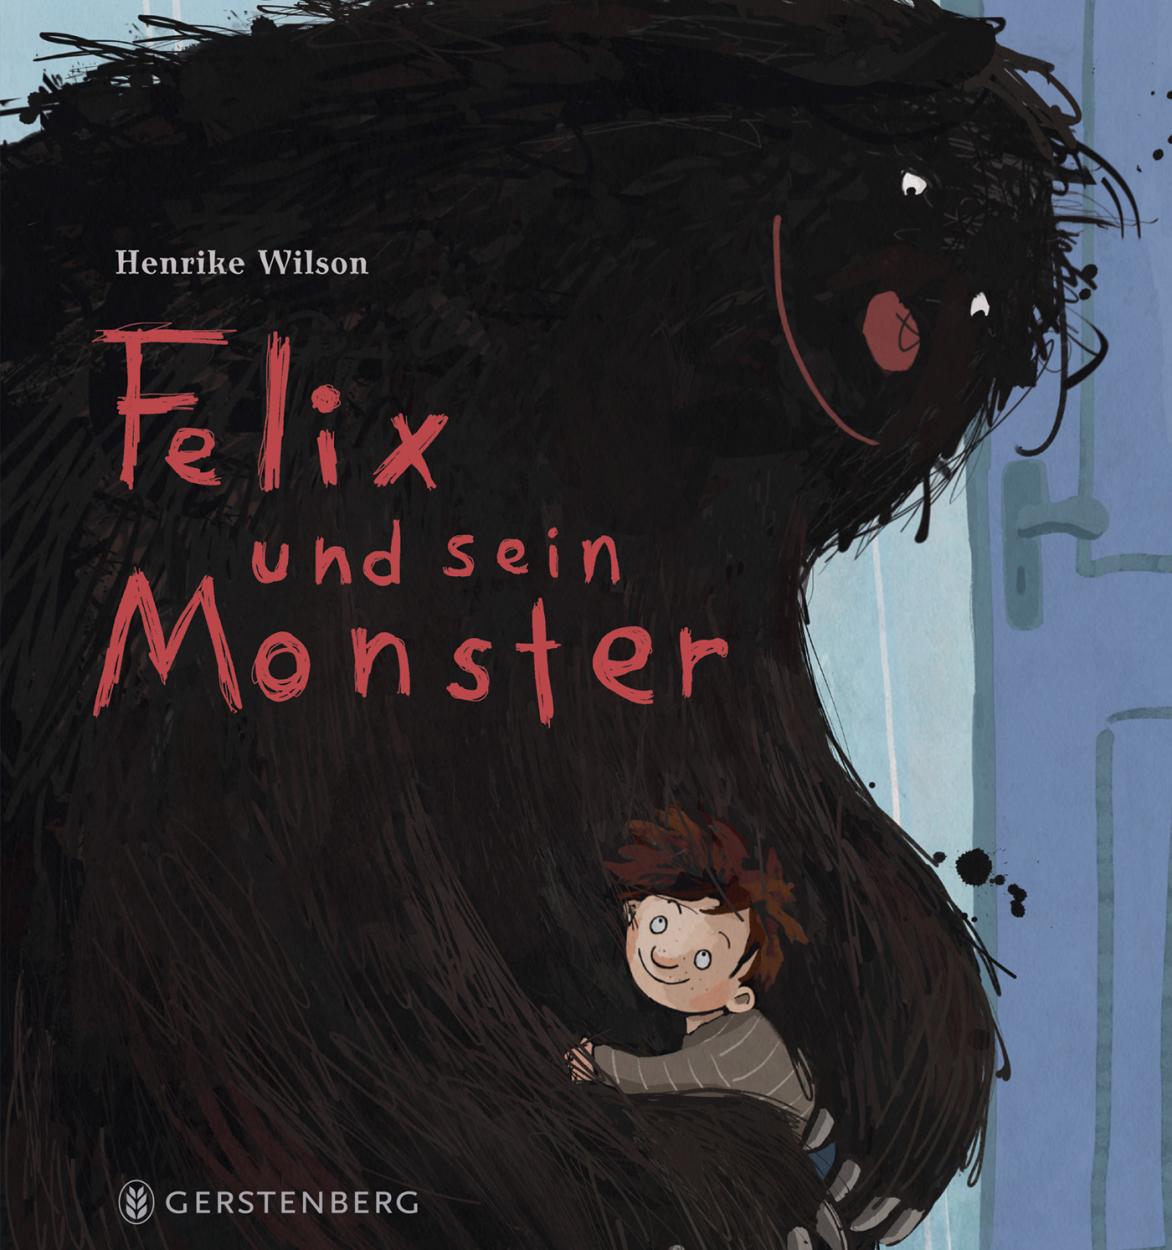 »Felix und sein Monster« — GERSTENBERG